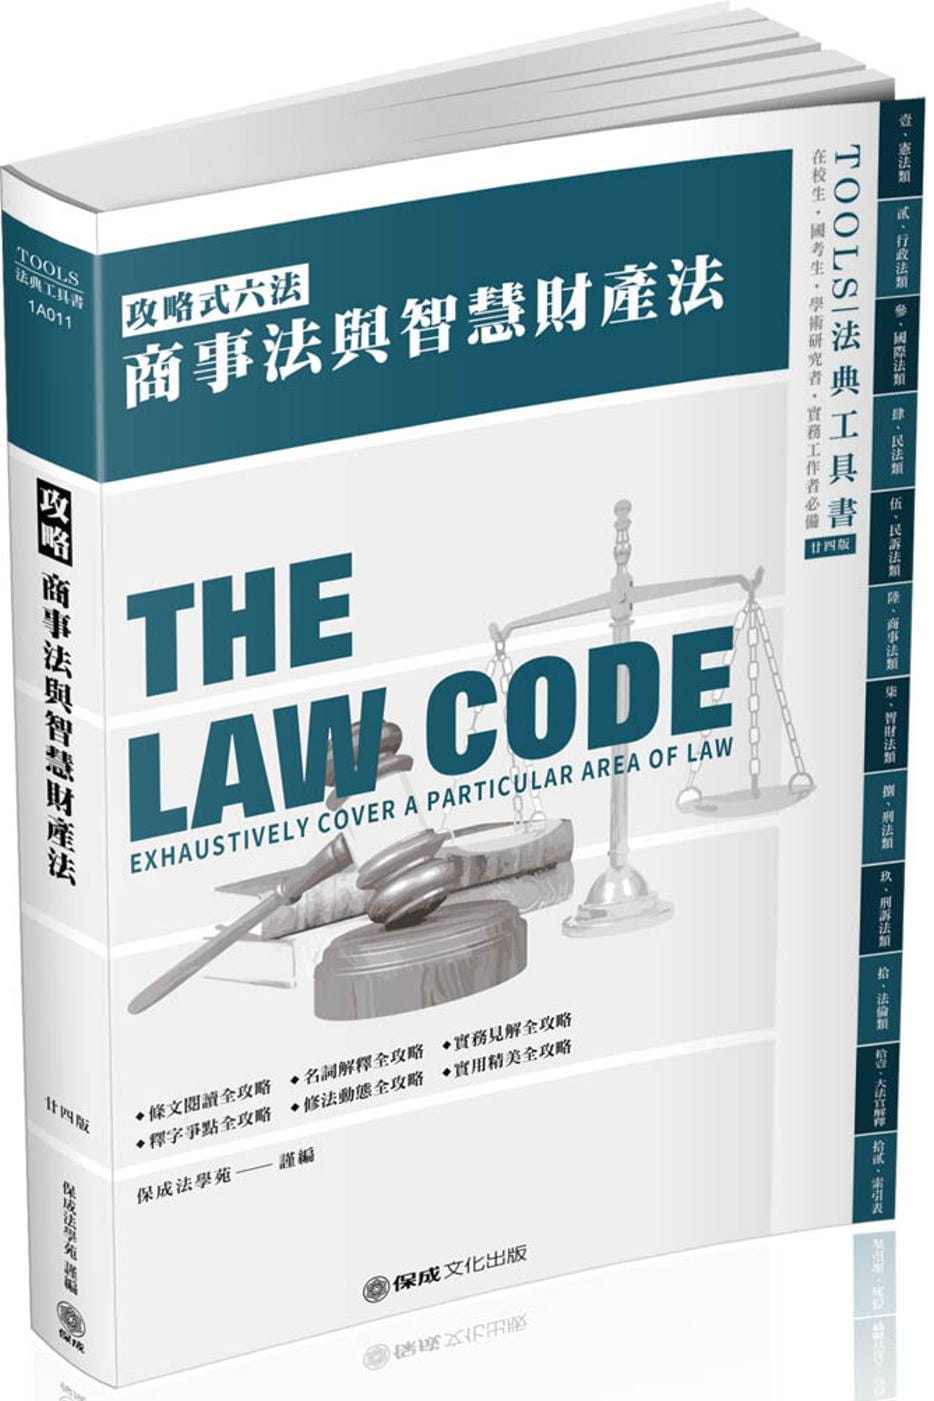 攻略商事法與智慧財產權法：2020法律法典工具書(保成)(24版)